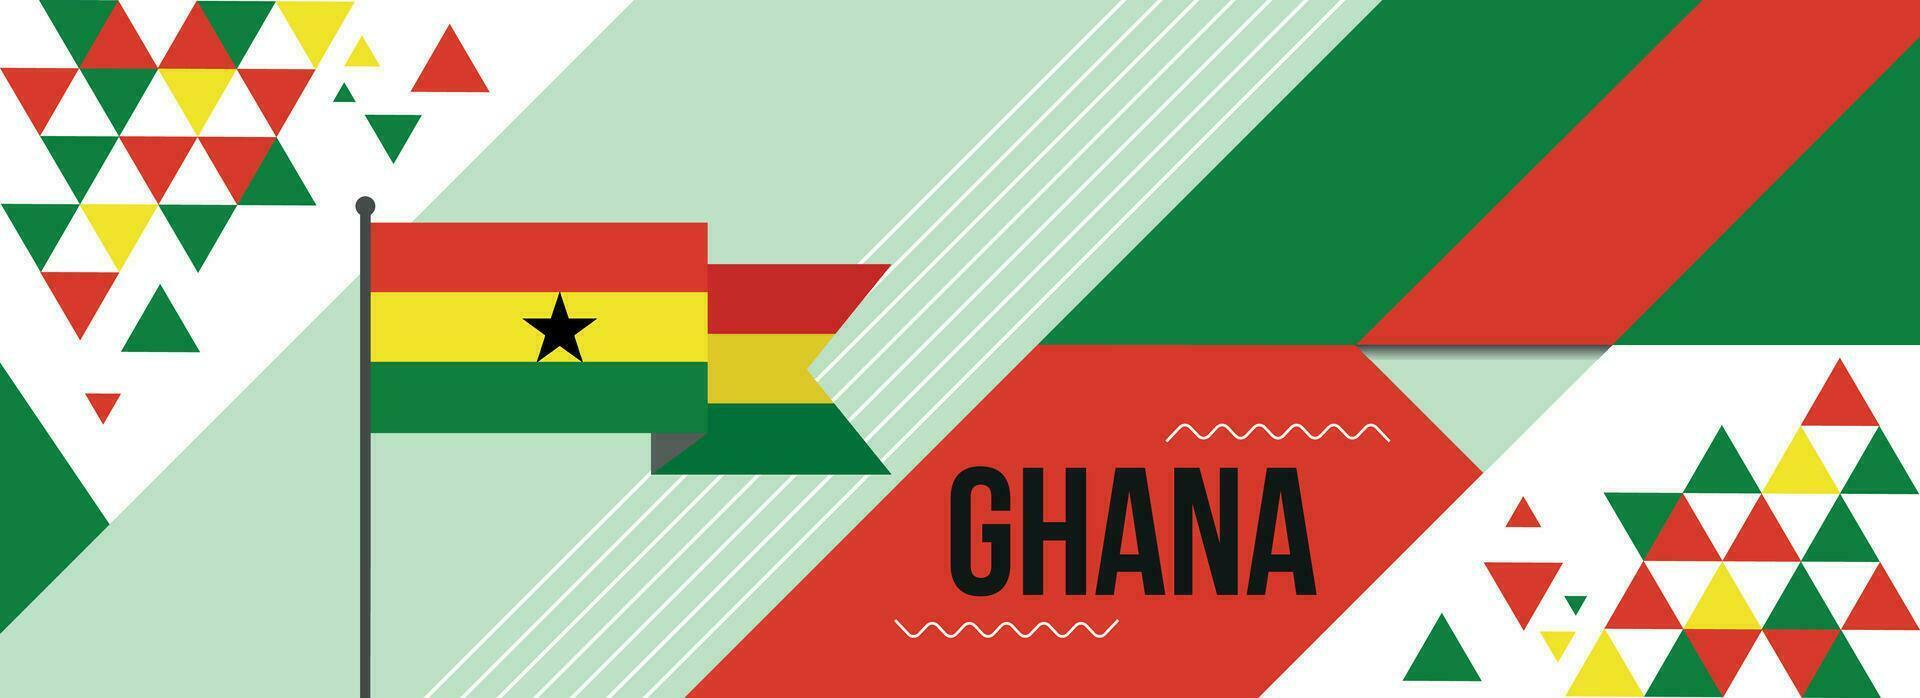 Ghana nazionale o indipendenza giorno bandiera design per nazione celebrazione. bandiera di Ghana con moderno retrò design e astratto geometrico icone. vettore illustrazione.